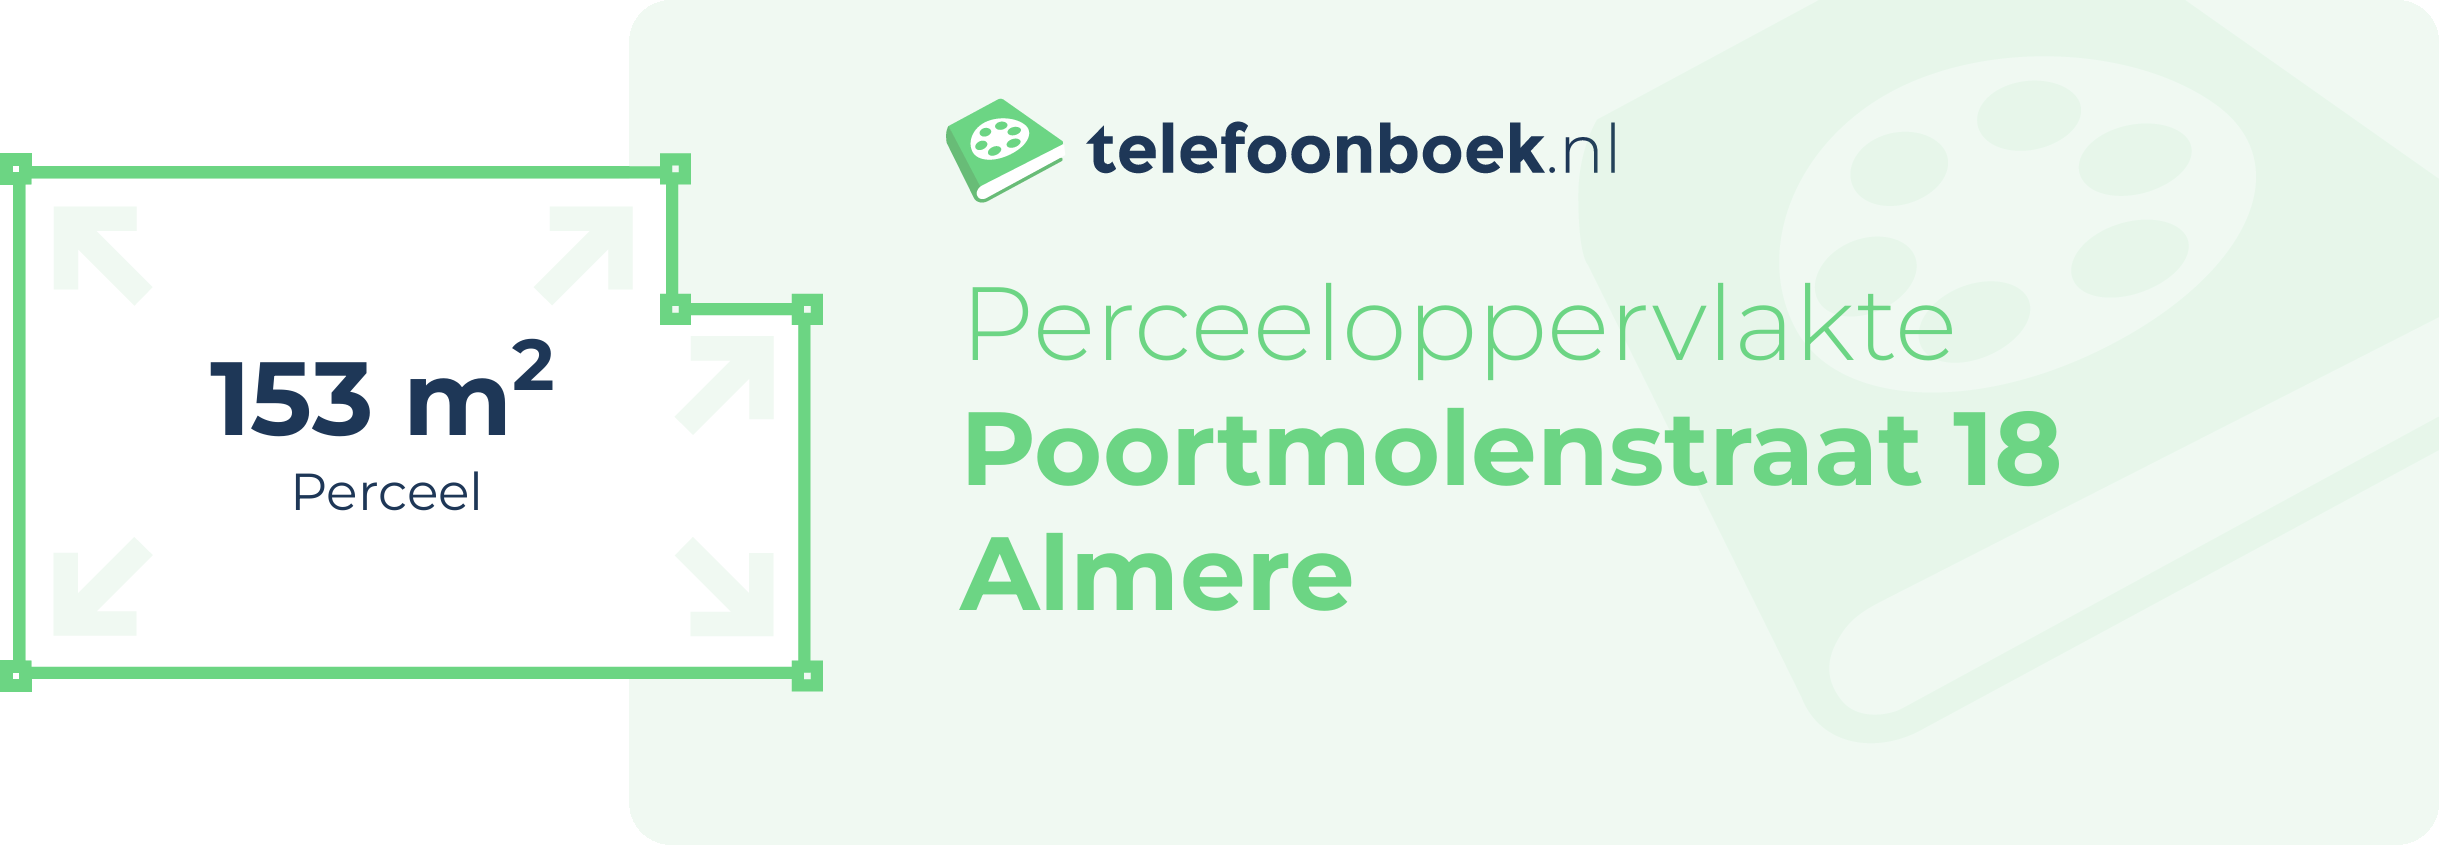 Perceeloppervlakte Poortmolenstraat 18 Almere